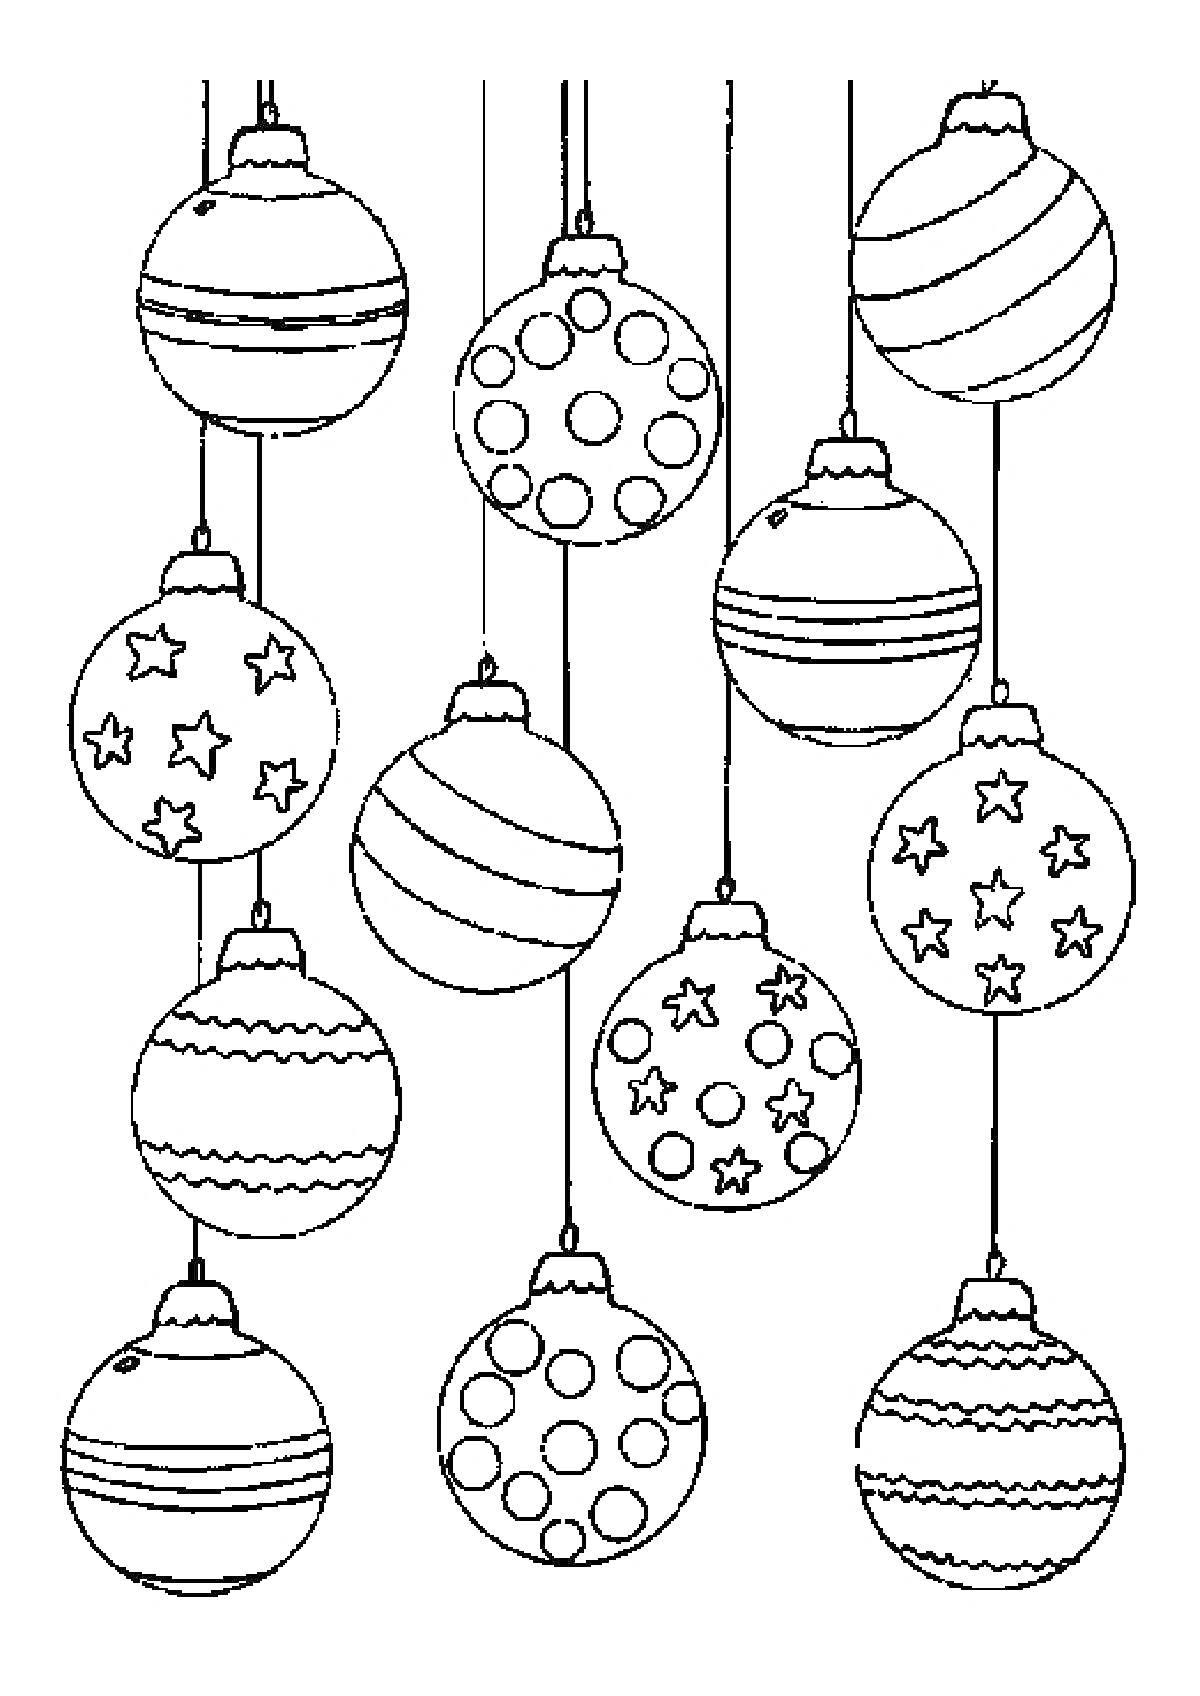 новогодние шары на веревочках с различными узорами, включая полоски, звезды, круги и зигзаги